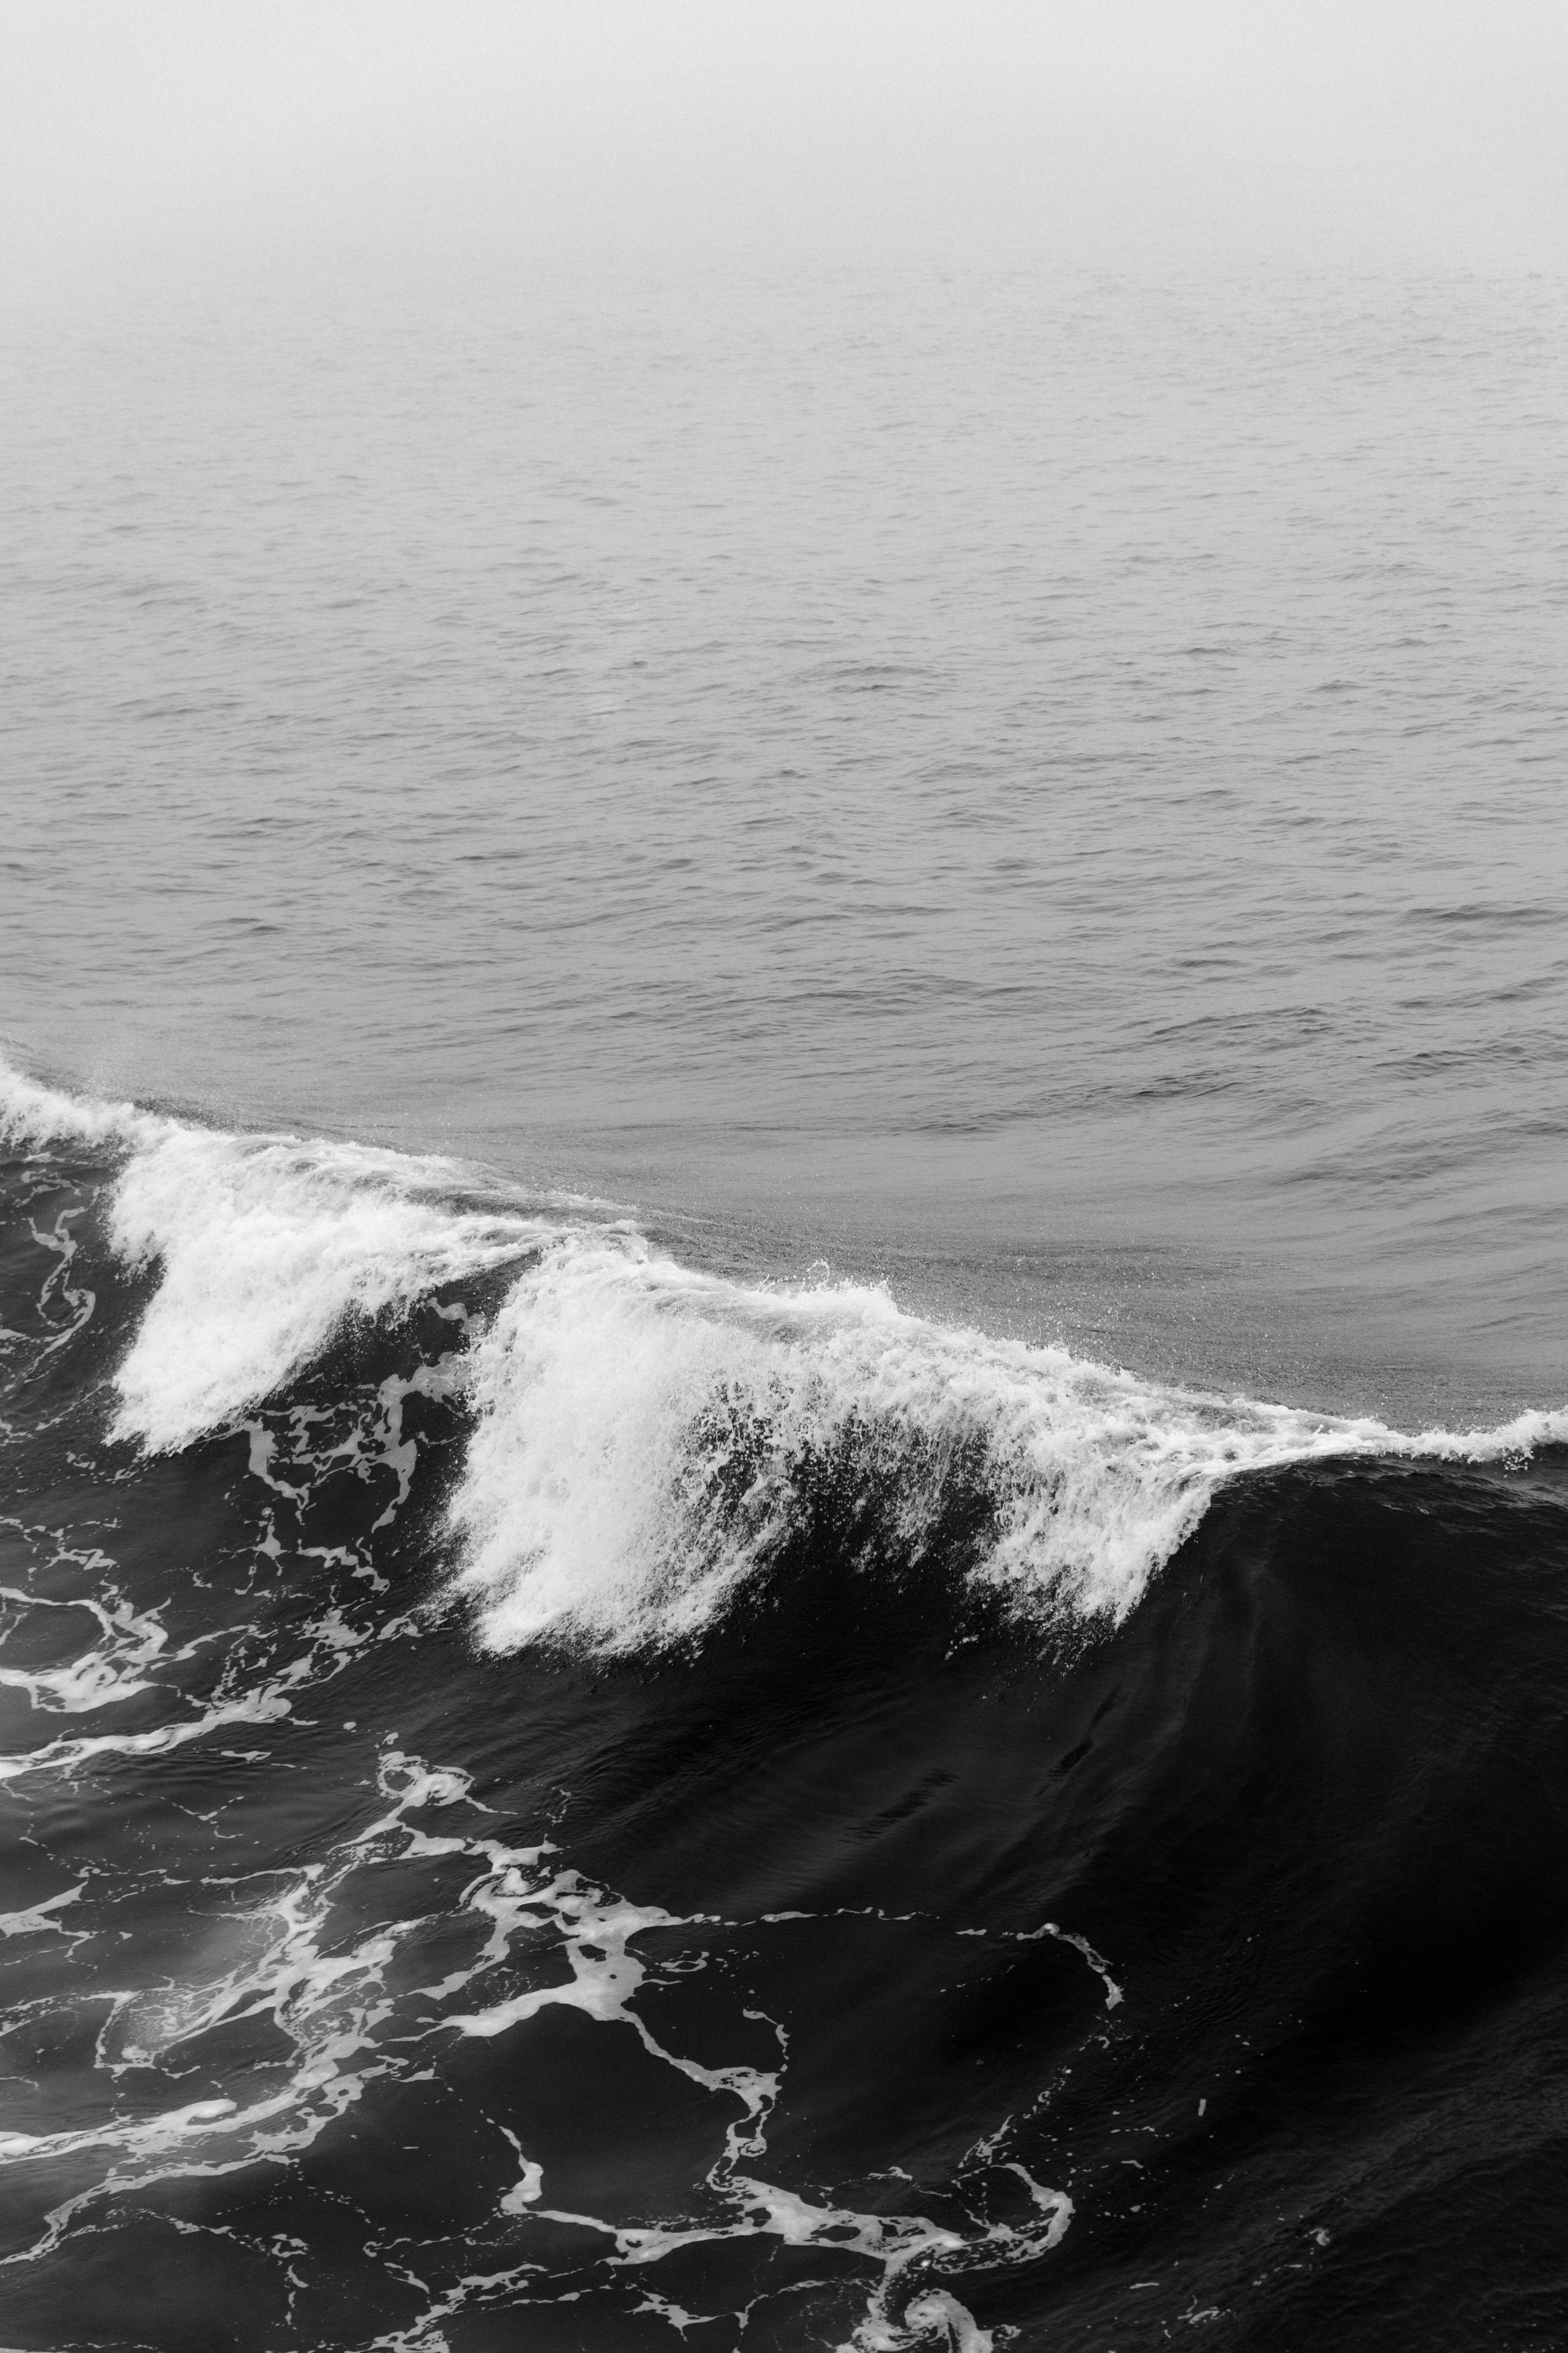 深邃的大海上一片暗黑色海浪由远及近让人感叹大海的壮阔和人类的渺小